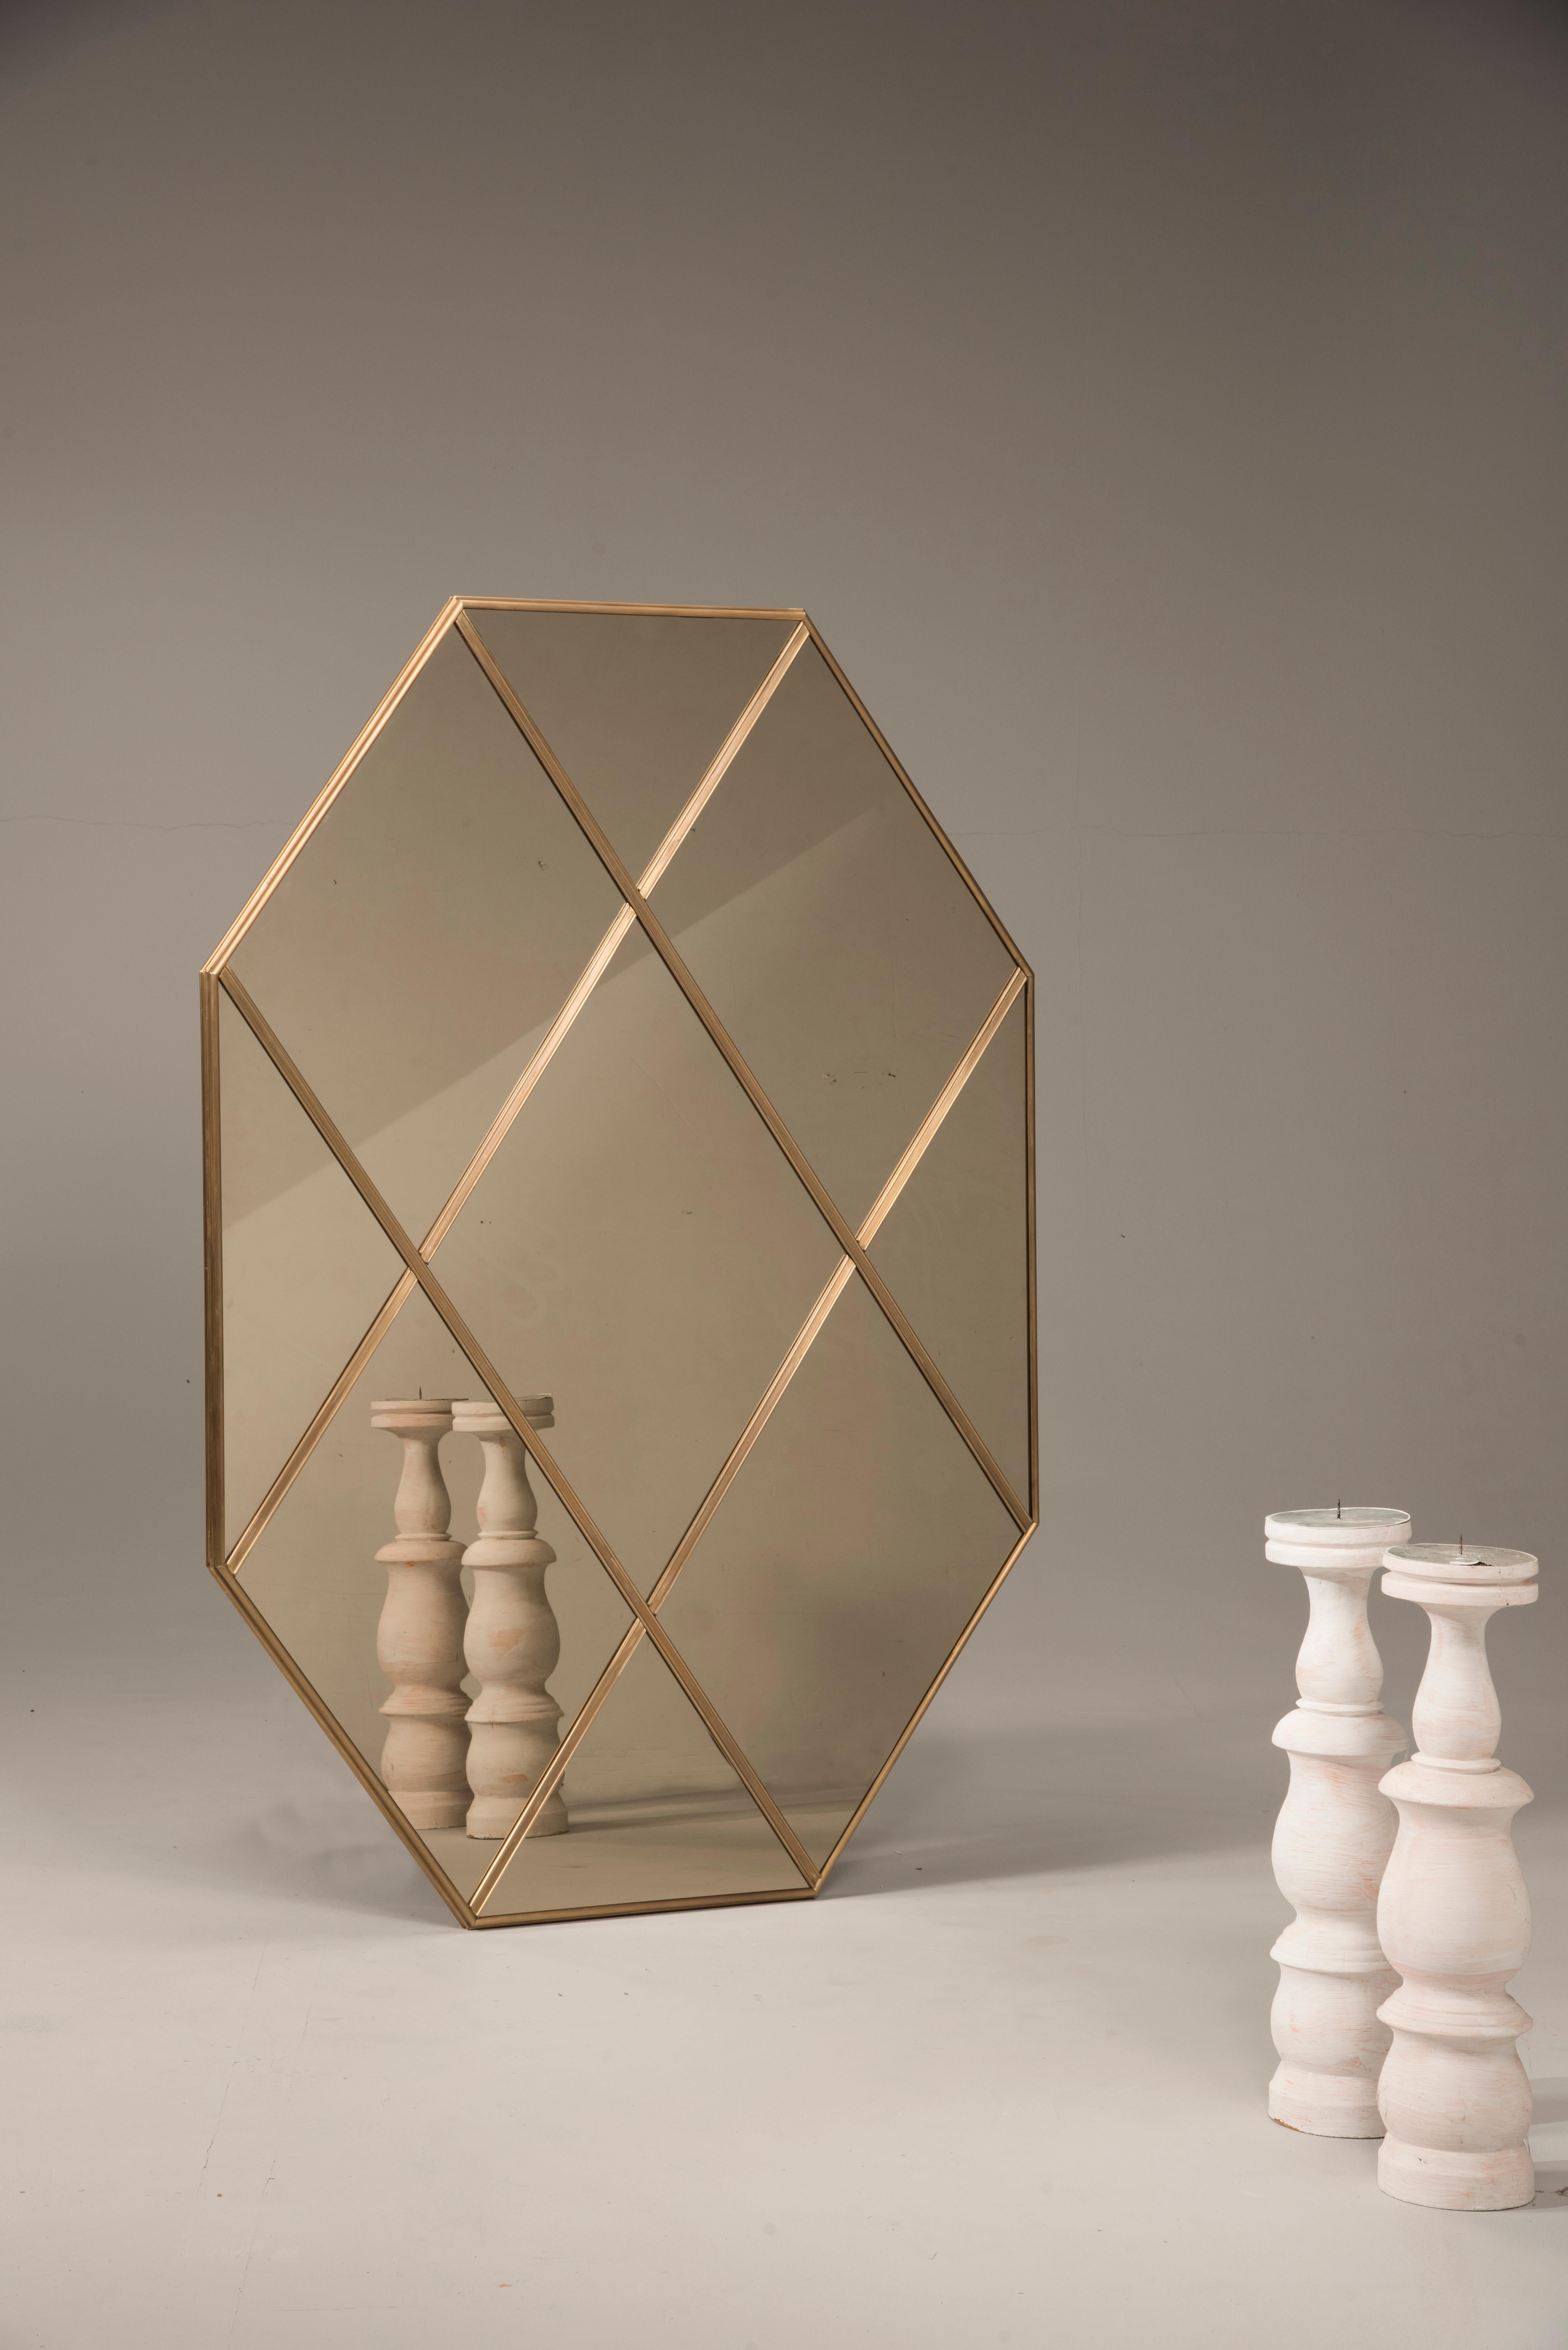 Pescetta présente sa nouvelle collection de miroirs contemporains personnalisables à cadre en laiton. Avec leur cadre en laiton et leur fenêtre à plusieurs panneaux, ces miroirs reproduisent l'idée du style Art déco du début du XXe siècle. Ils